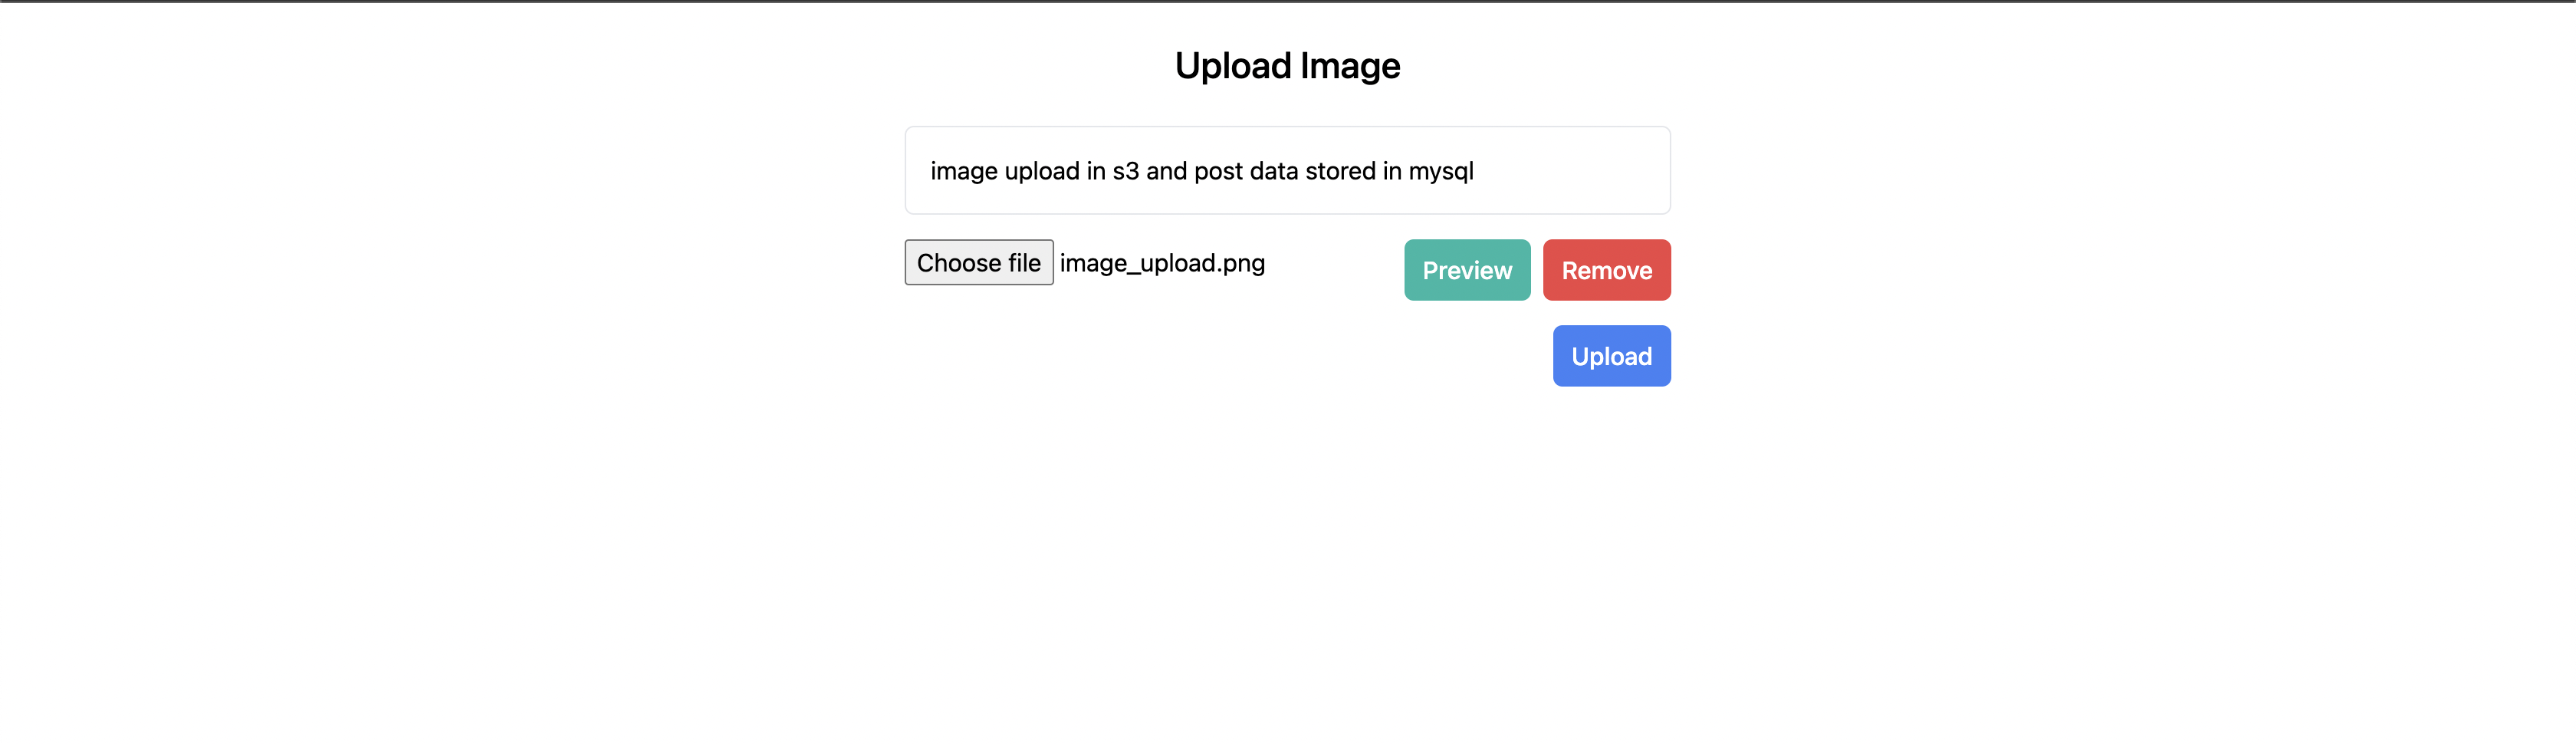 upload image input